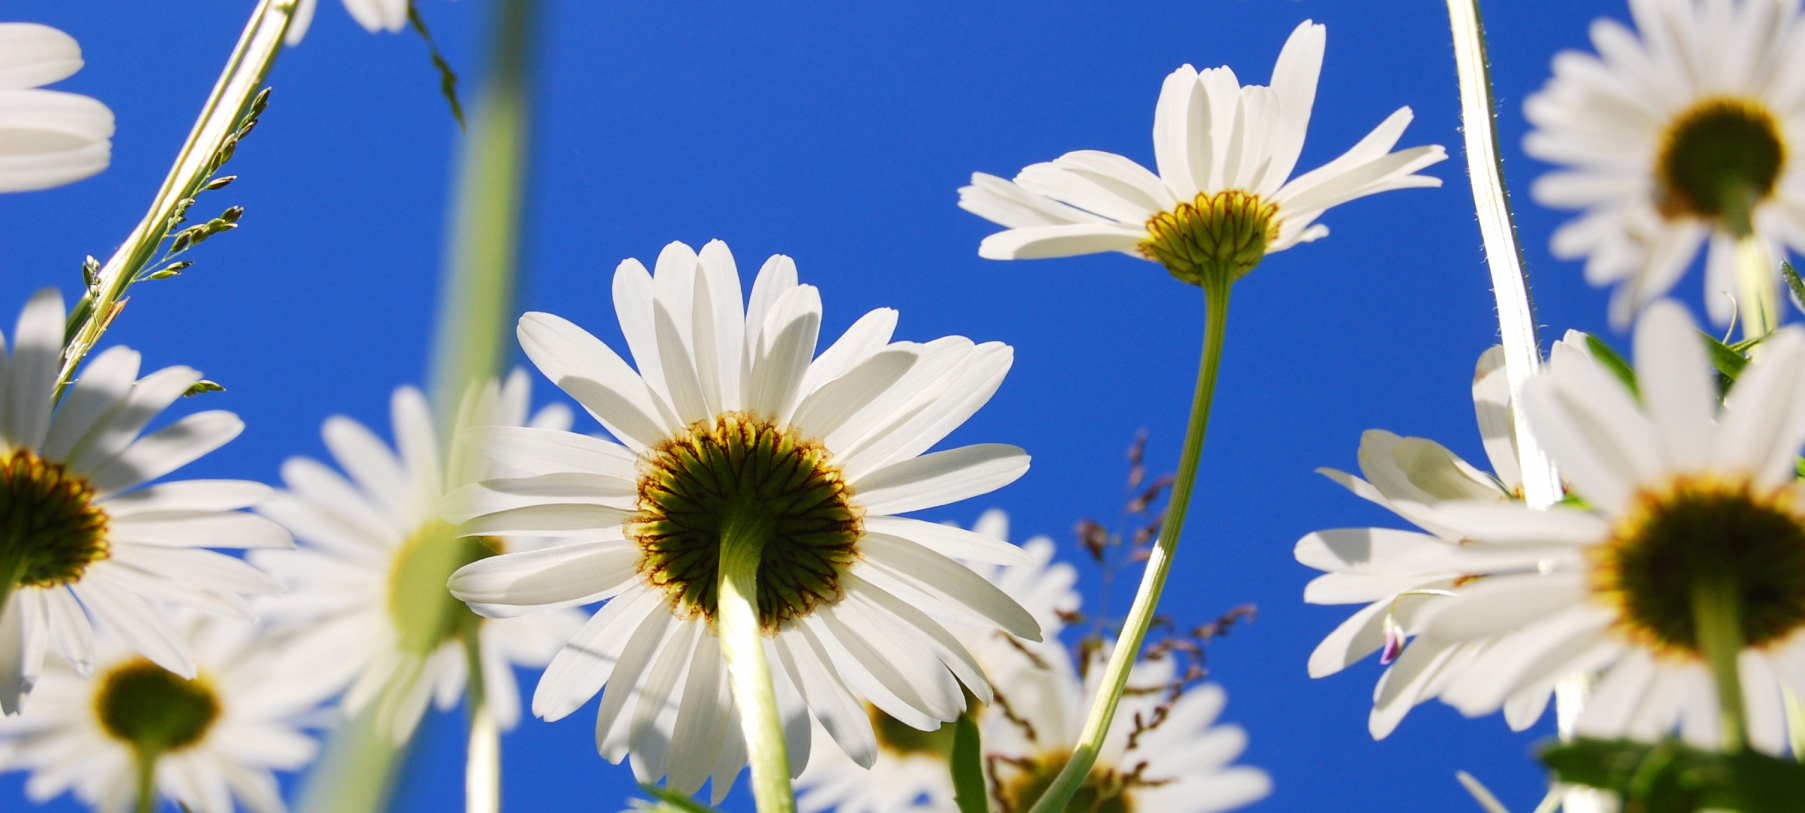 Daisy-flower-in-summer